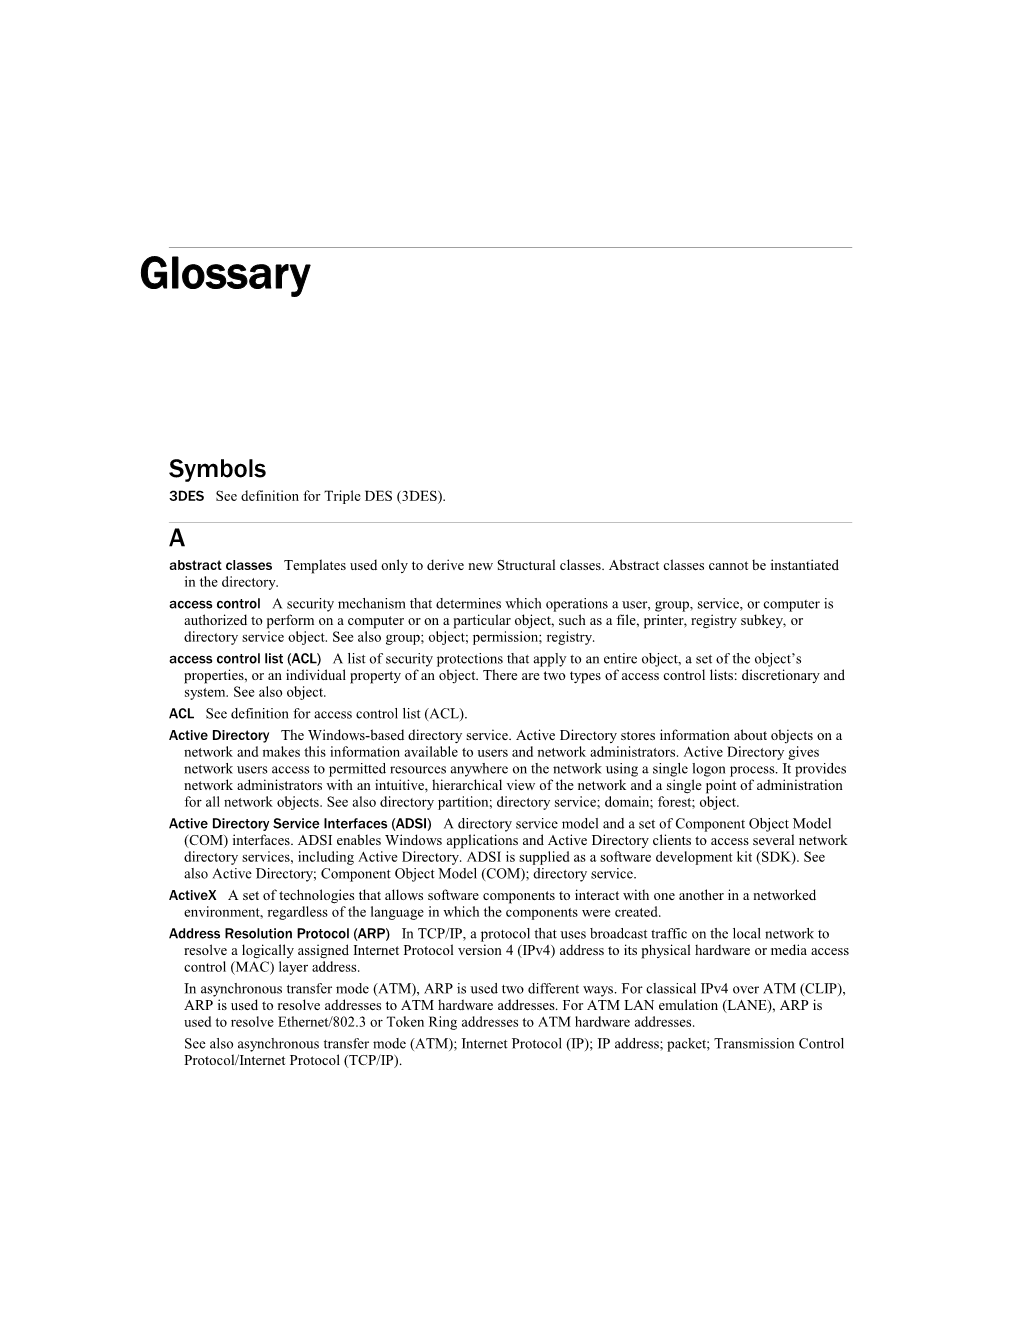 IIS 6.0 Resource Guide Glossary1